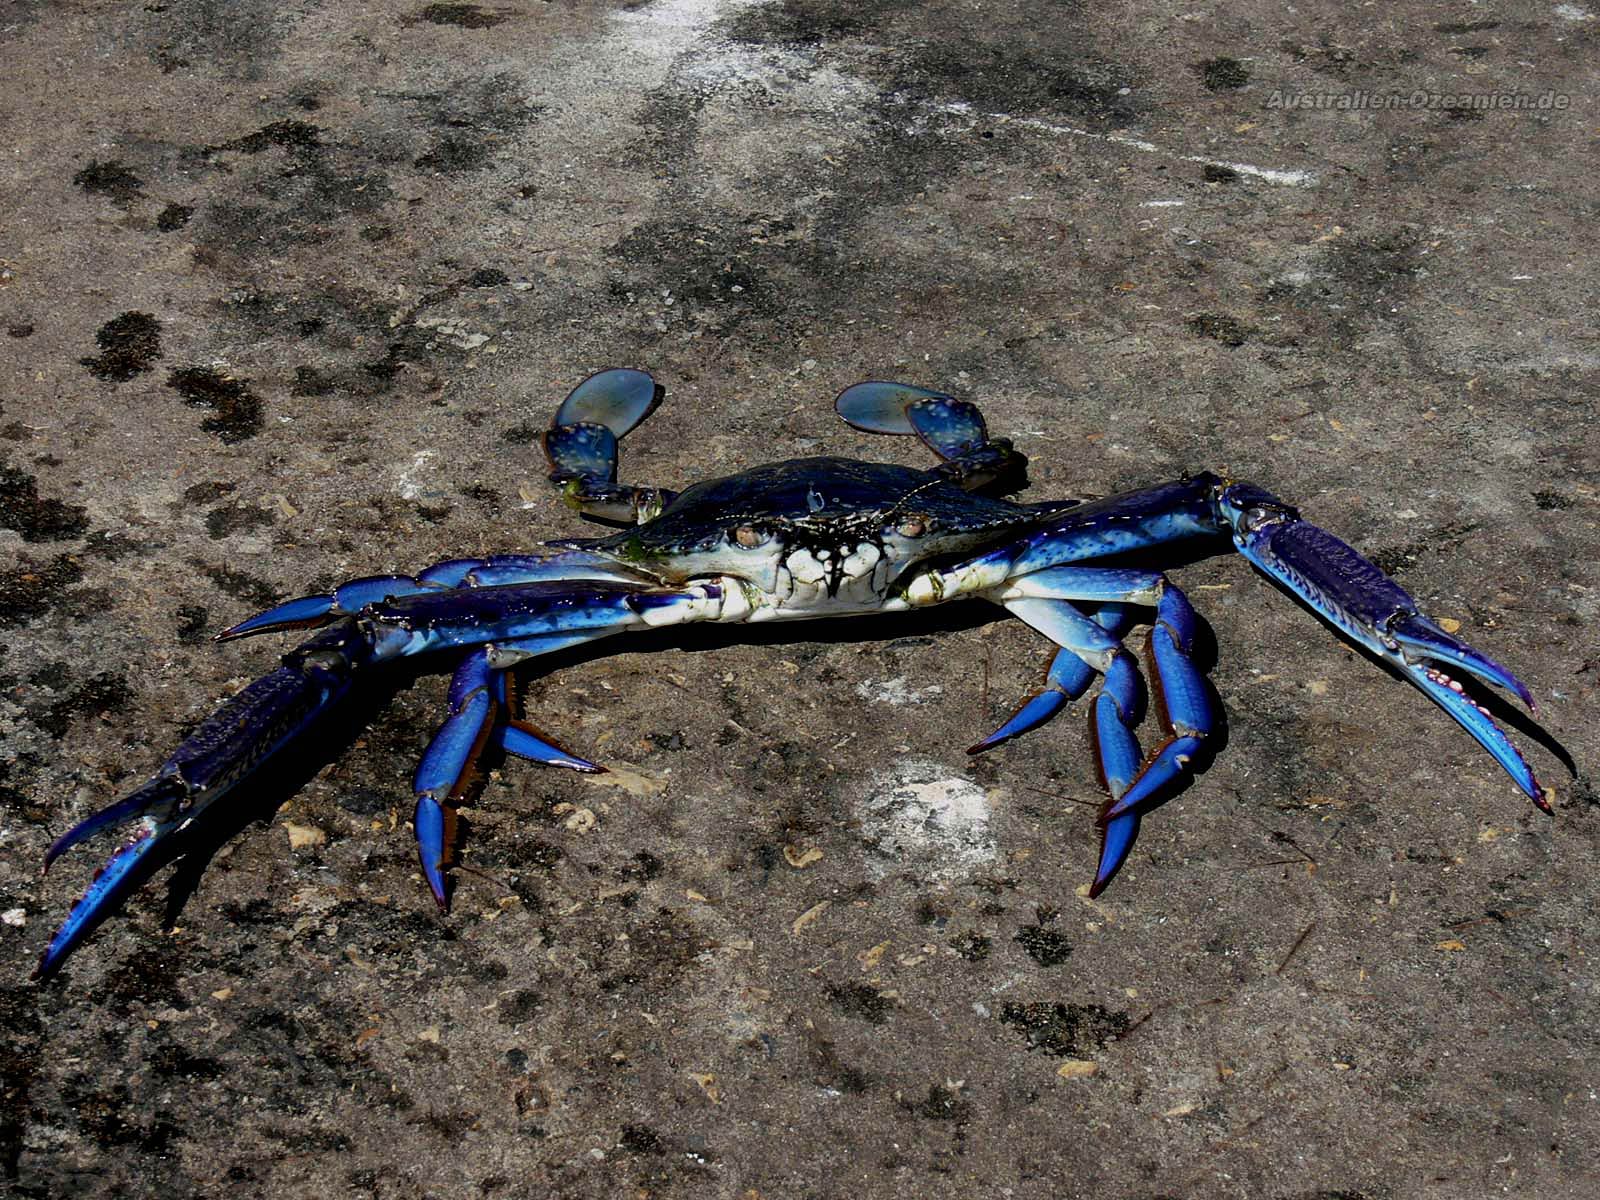 Blue Crab Wallpaper